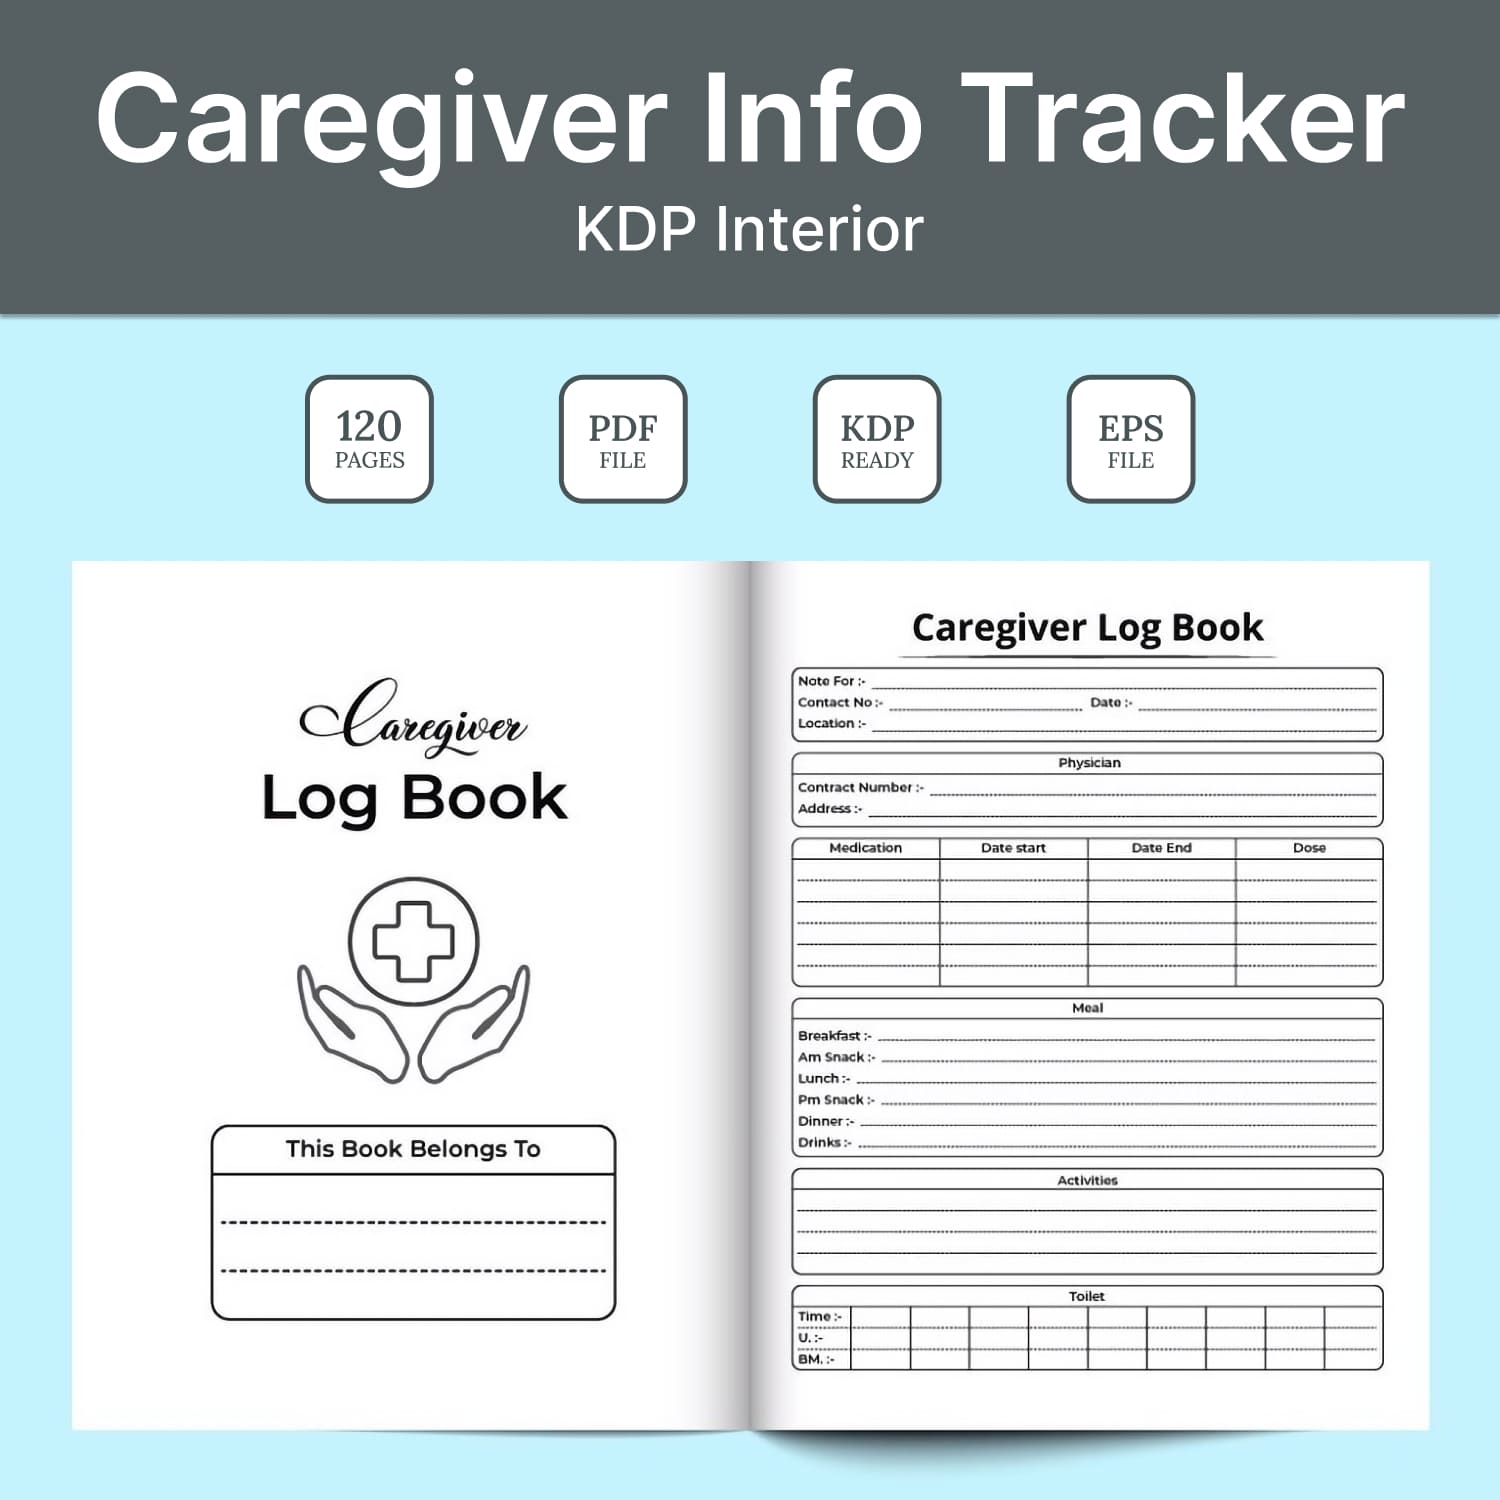 Caregiver info tracker KDP interior - main image preview.